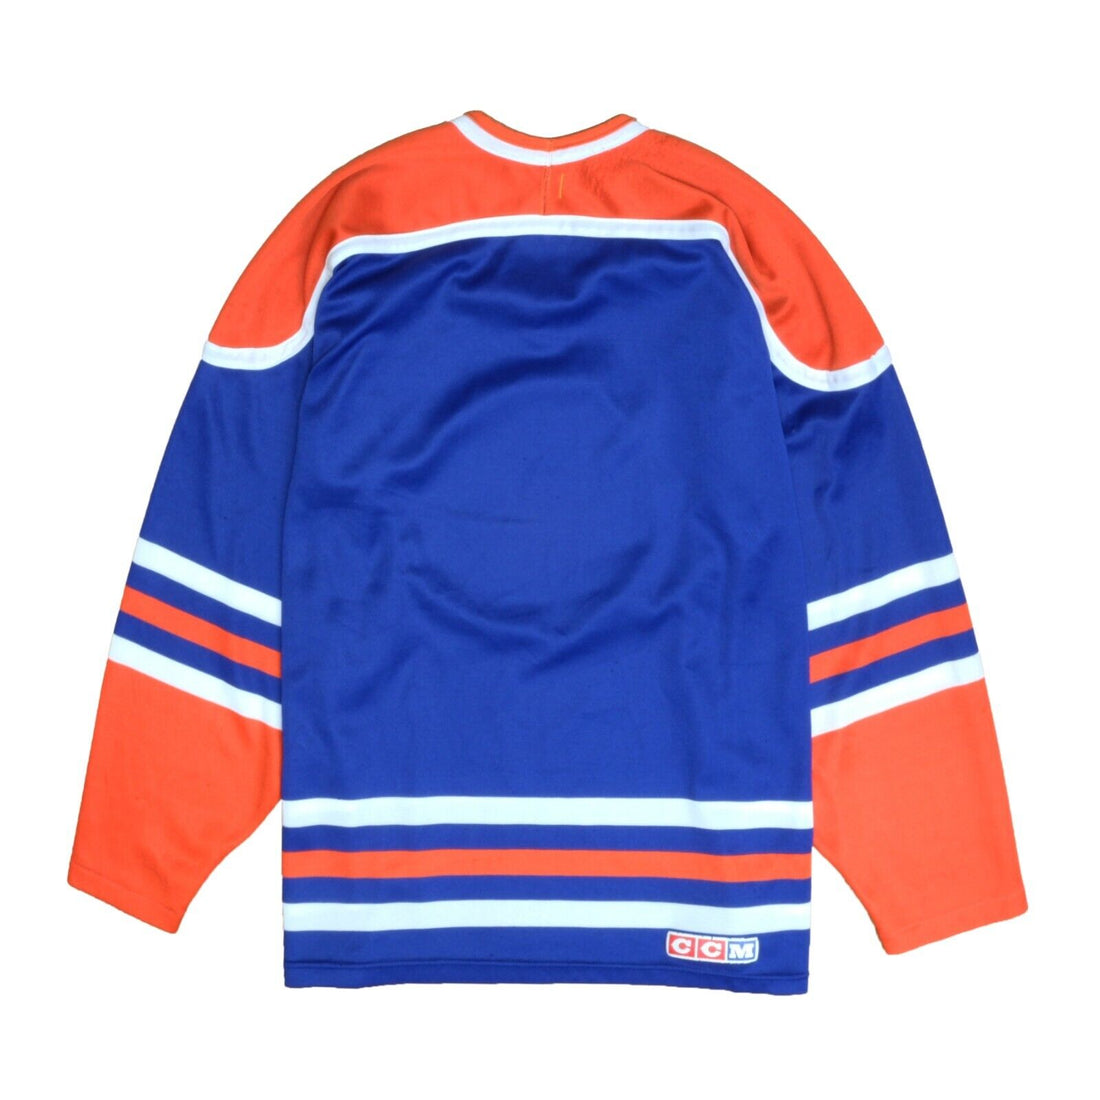 Vintage Edmonton Oilers CCM Maska Jersey Size Large Blue NHL